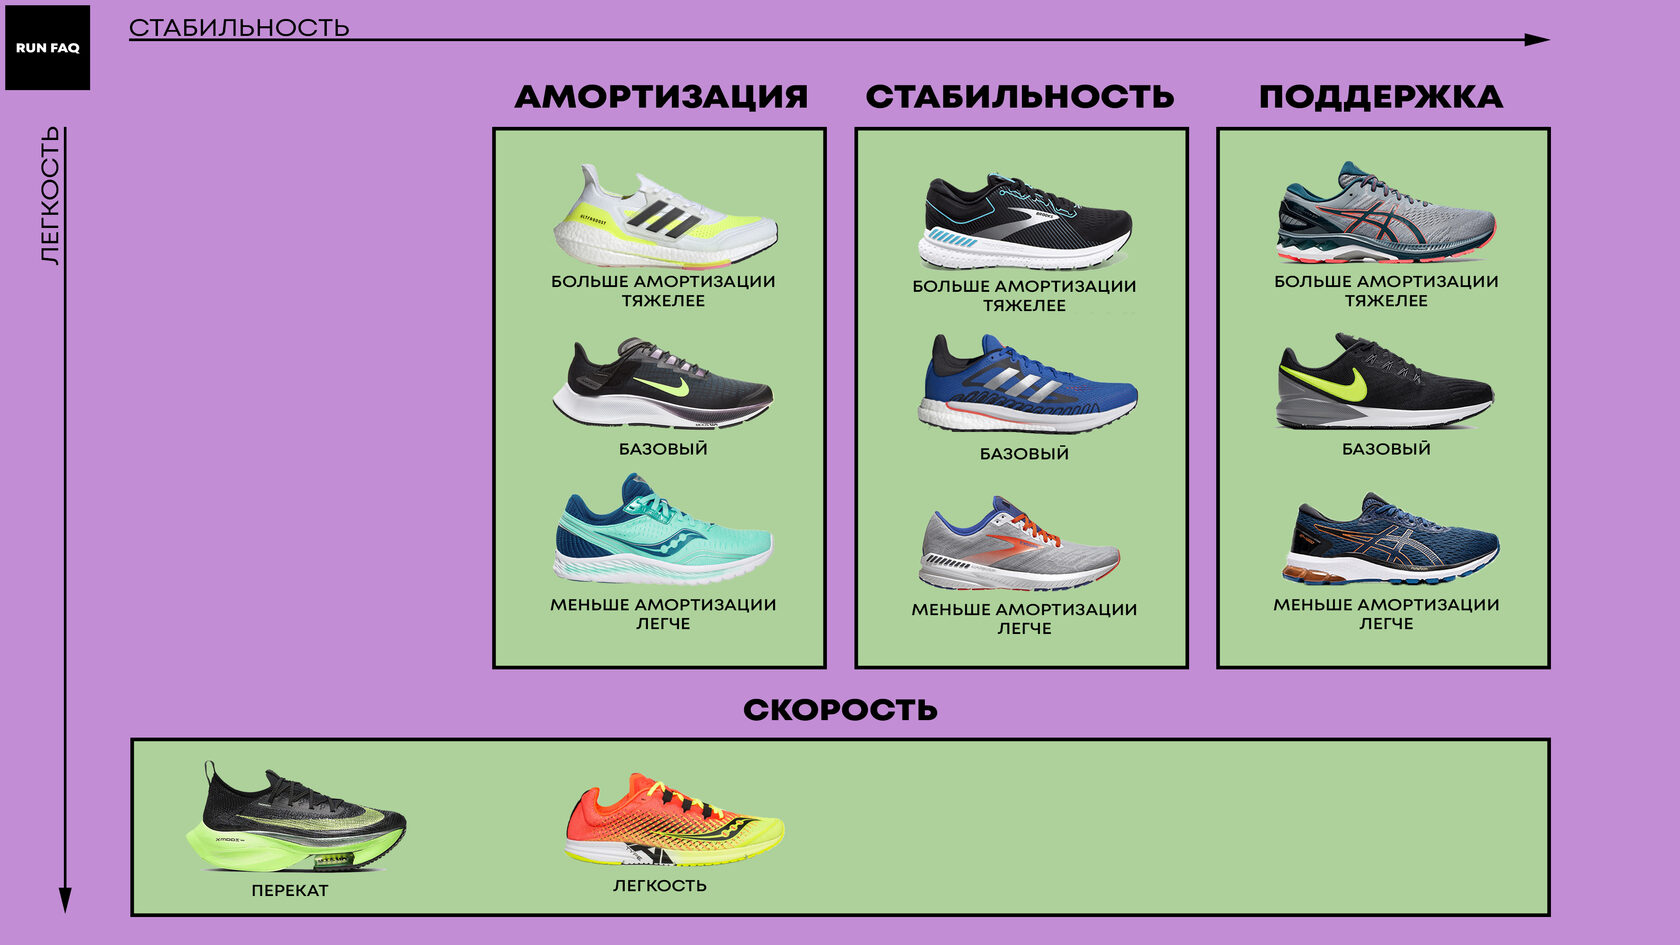 Как выбрать кроссовки для бега? гайд покупателя. 
как выбрать кроссовки для бега? гайд покупателя.